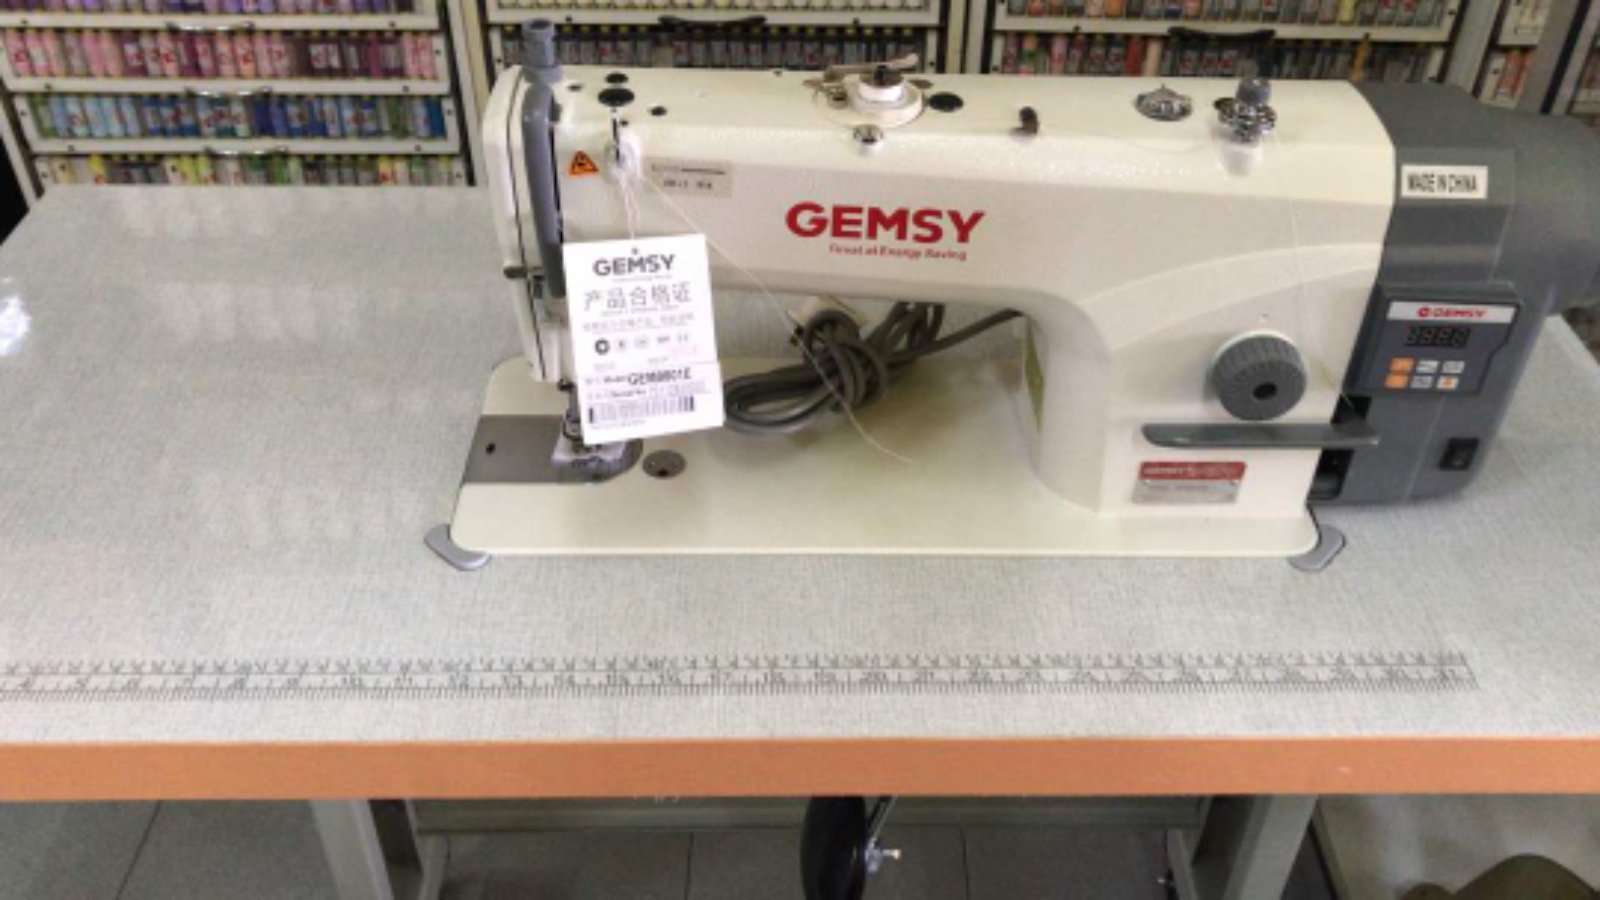 Gemsy Hi Speed Sewing Machine